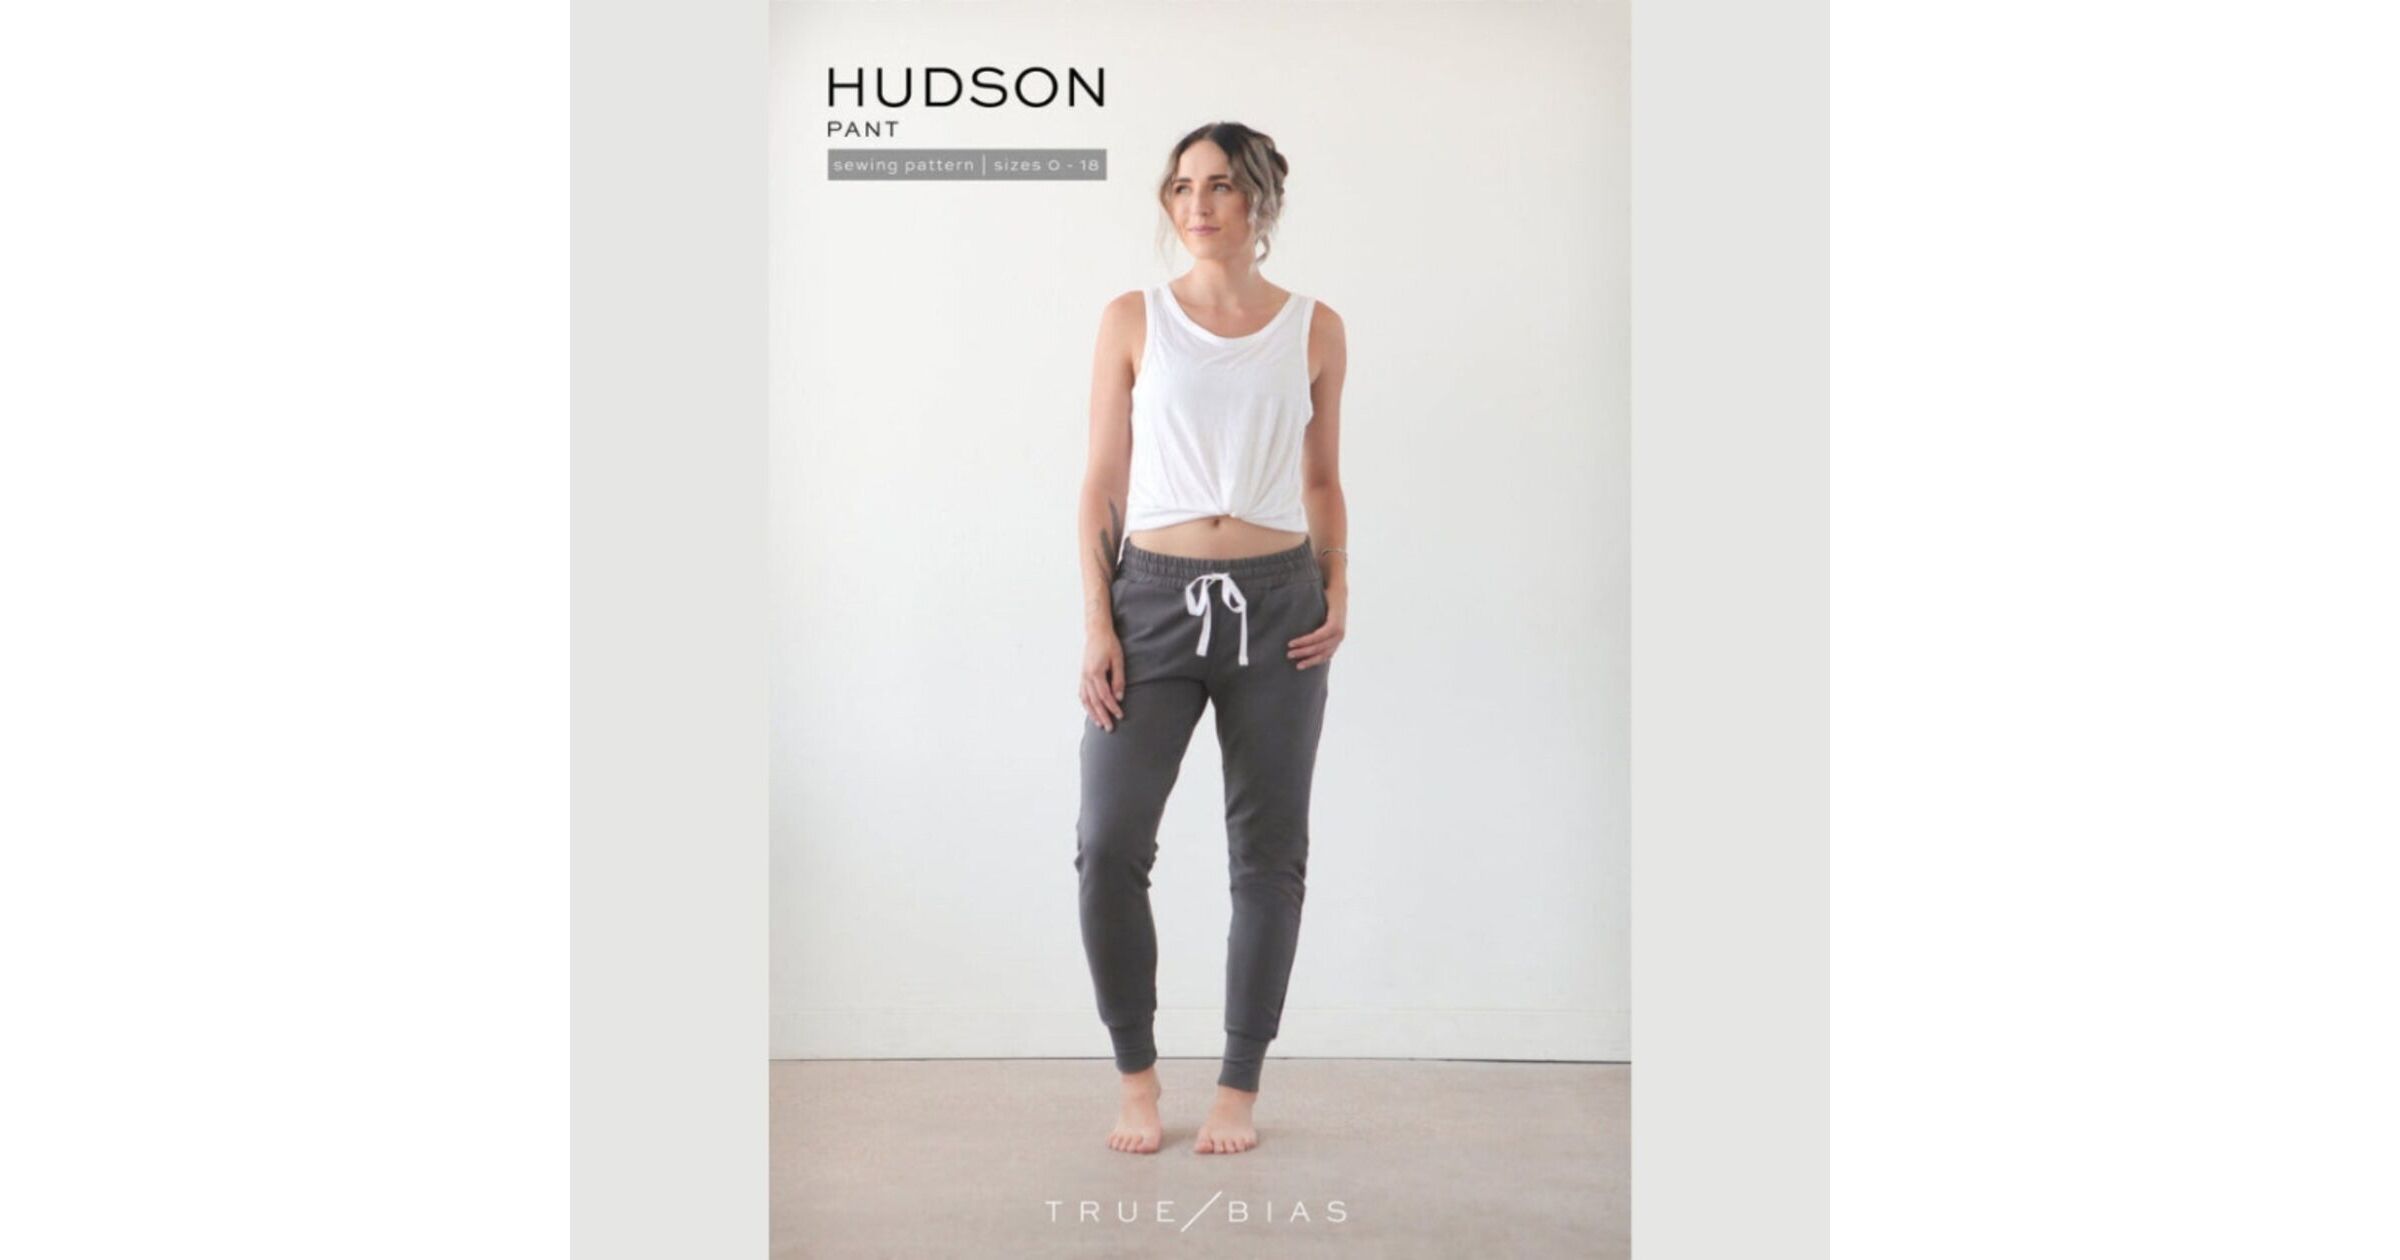 Hudson Pant